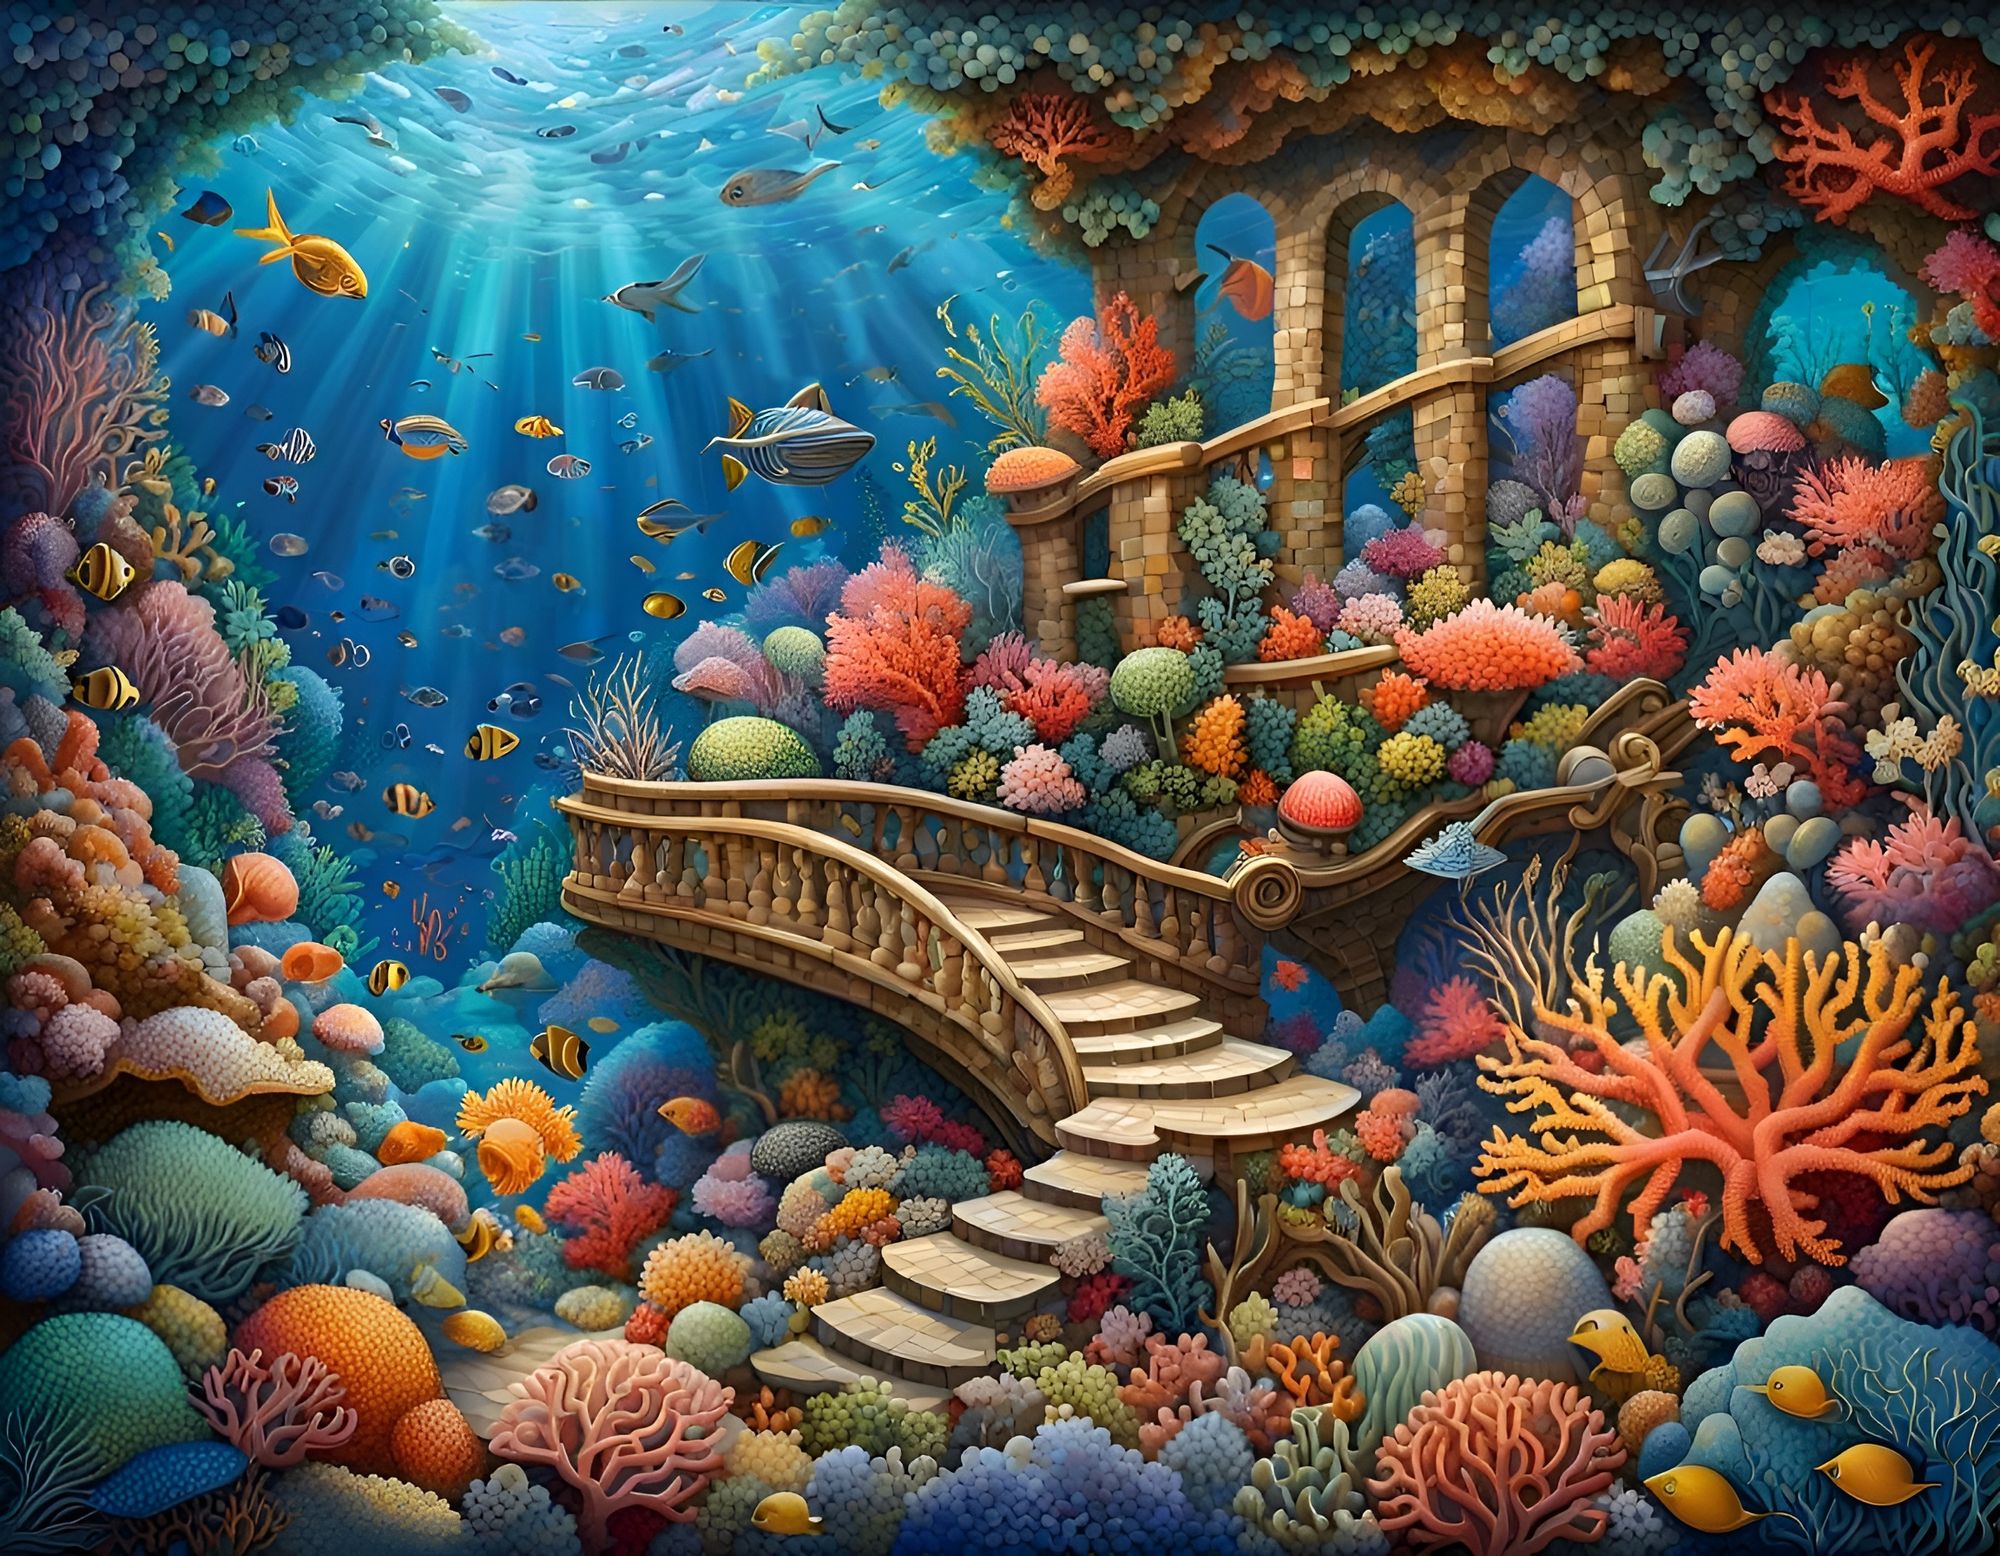 Share 127+ underwater scene drawing